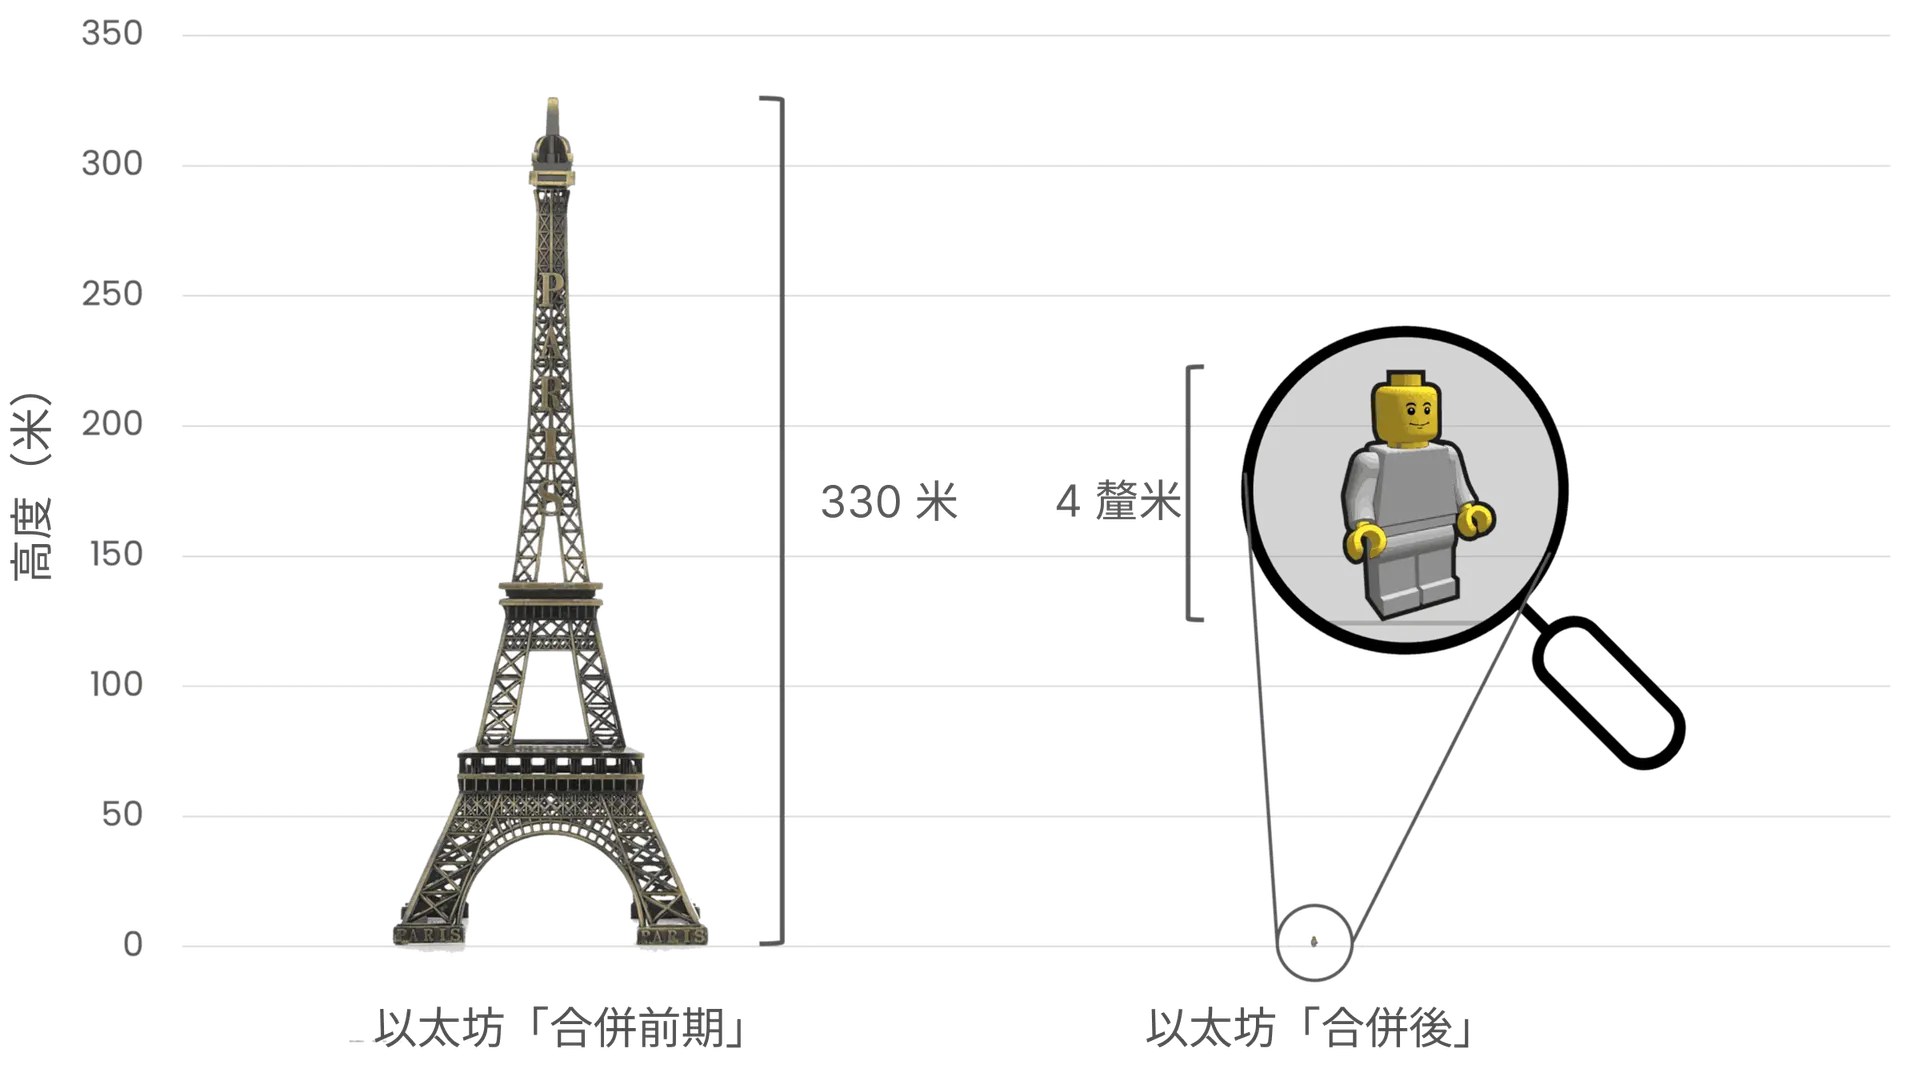 比較以太坊合併前後的能源消耗，以左方的艾菲爾鐵塔（高度 330 公尺）象徵合併前的高能耗，以及右方 4 公分高的樂高小玩偶，象徵合併後大幅降低的能源消耗